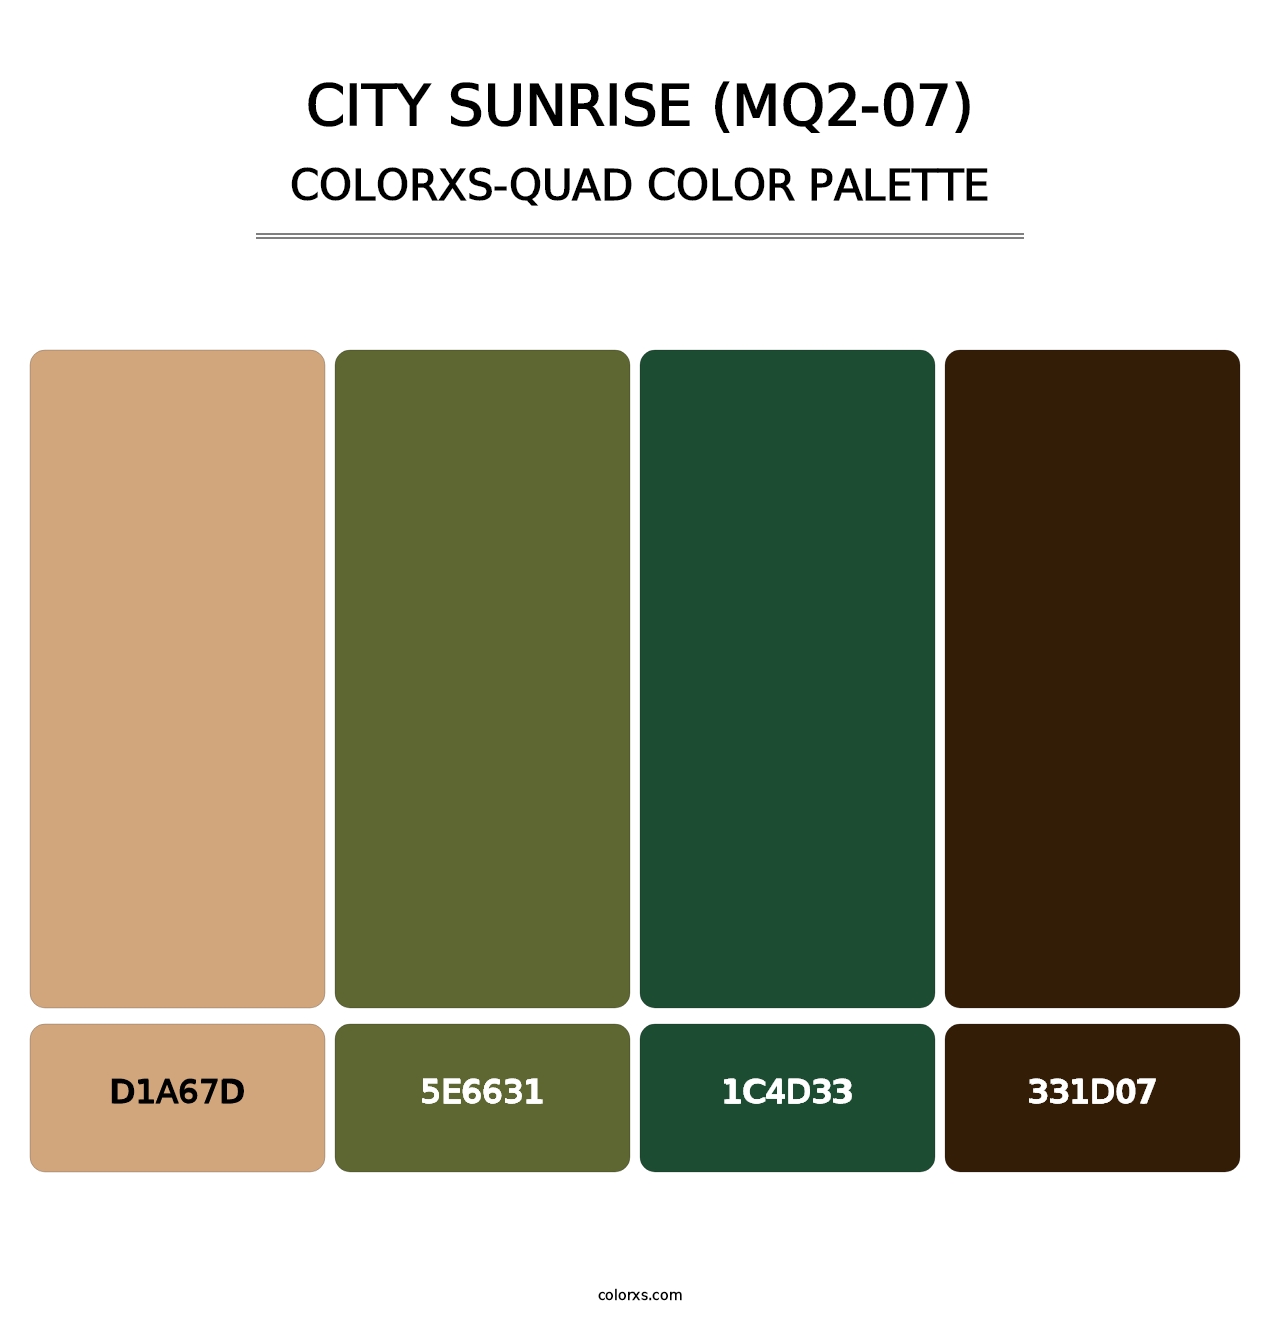 City Sunrise (MQ2-07) - Colorxs Quad Palette